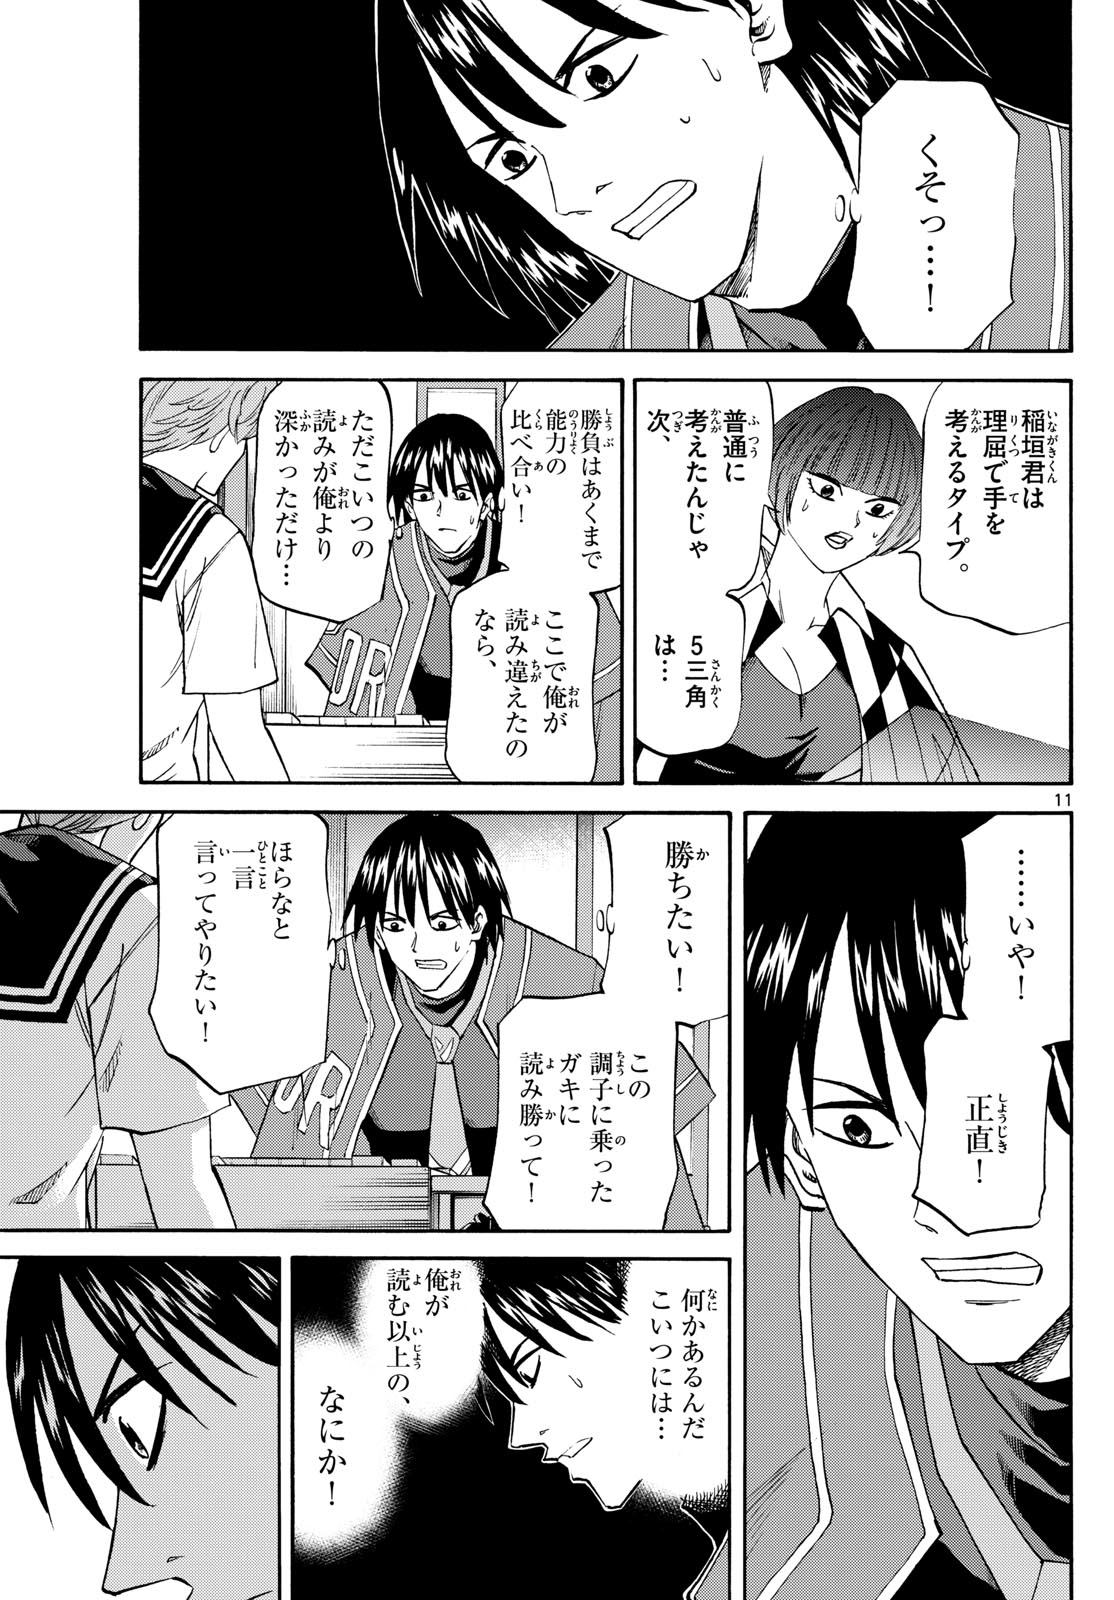 Tatsu to Ichigo - Chapter 198 - Page 11